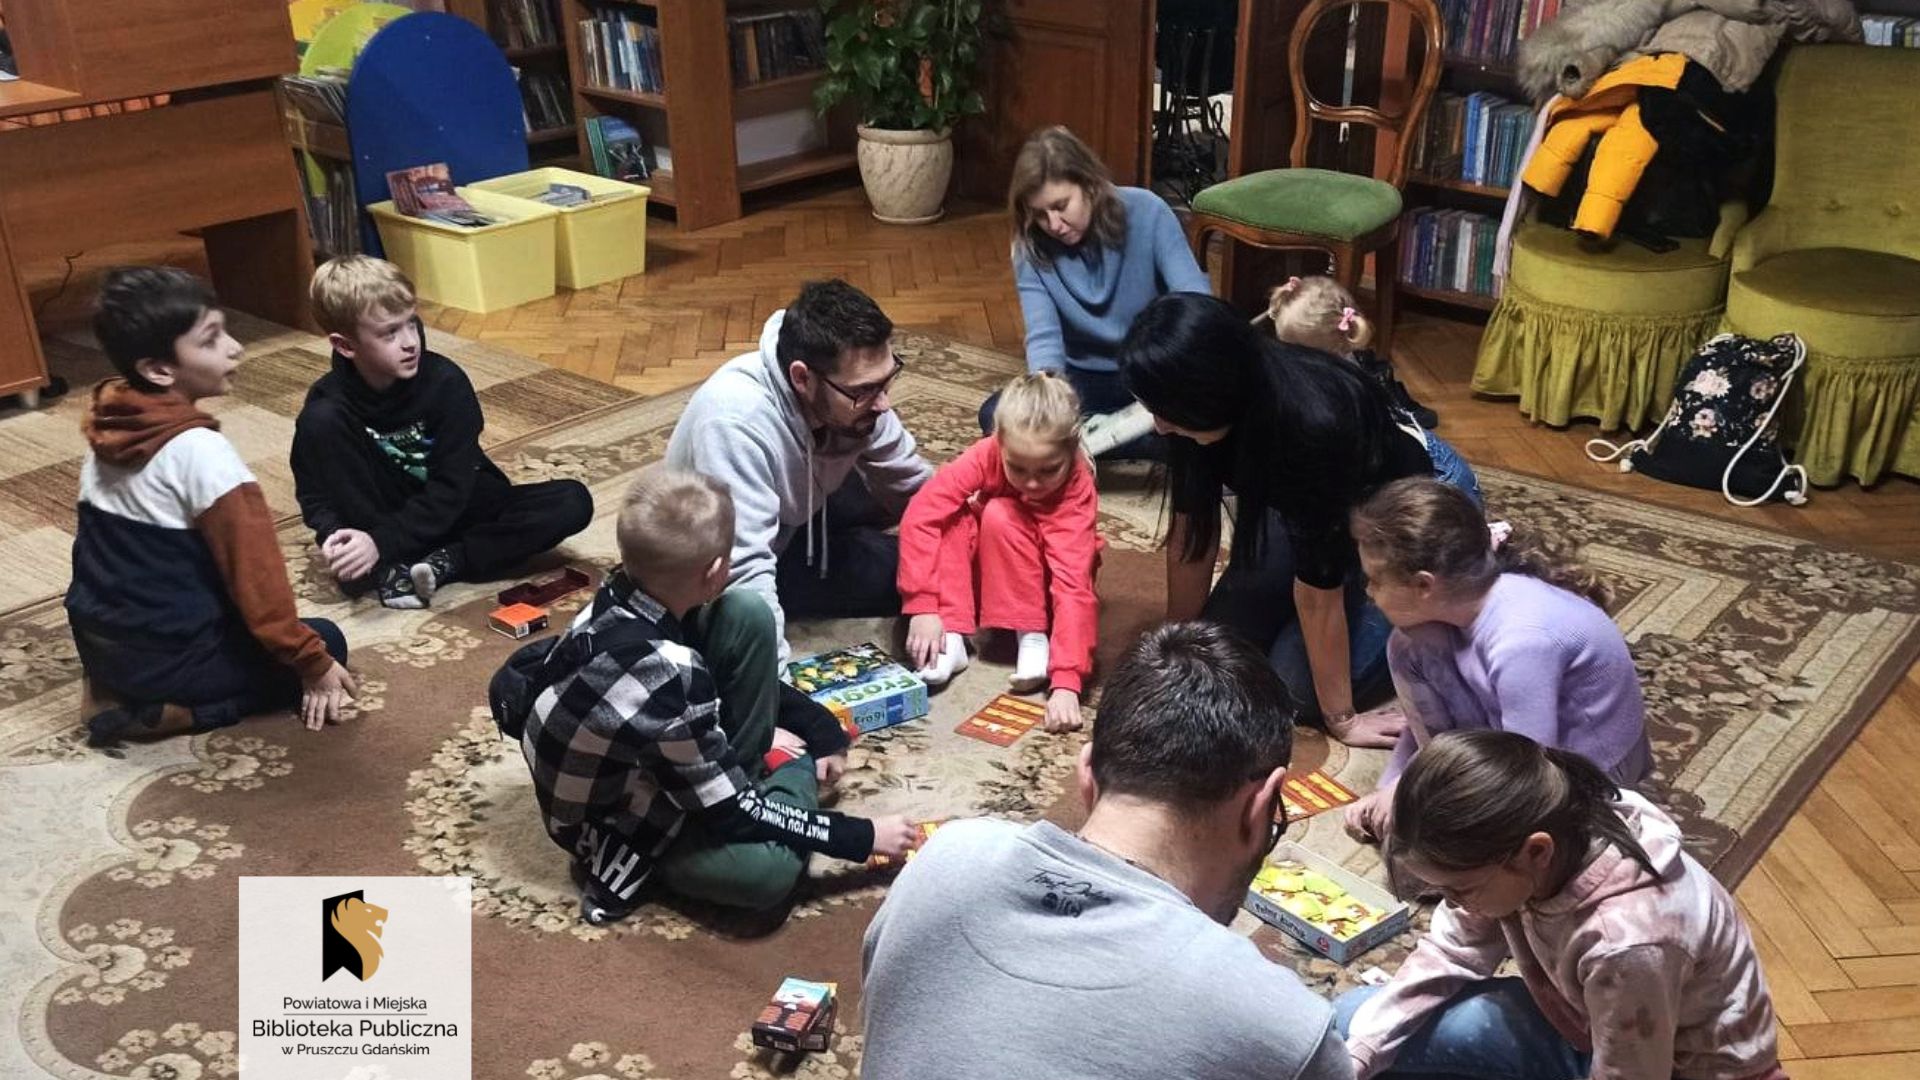 Siedmioro dzieci oraz czworo dorosłych siedzą na dywanie skupieni wokół kilku rozłożonych gier planszowych.